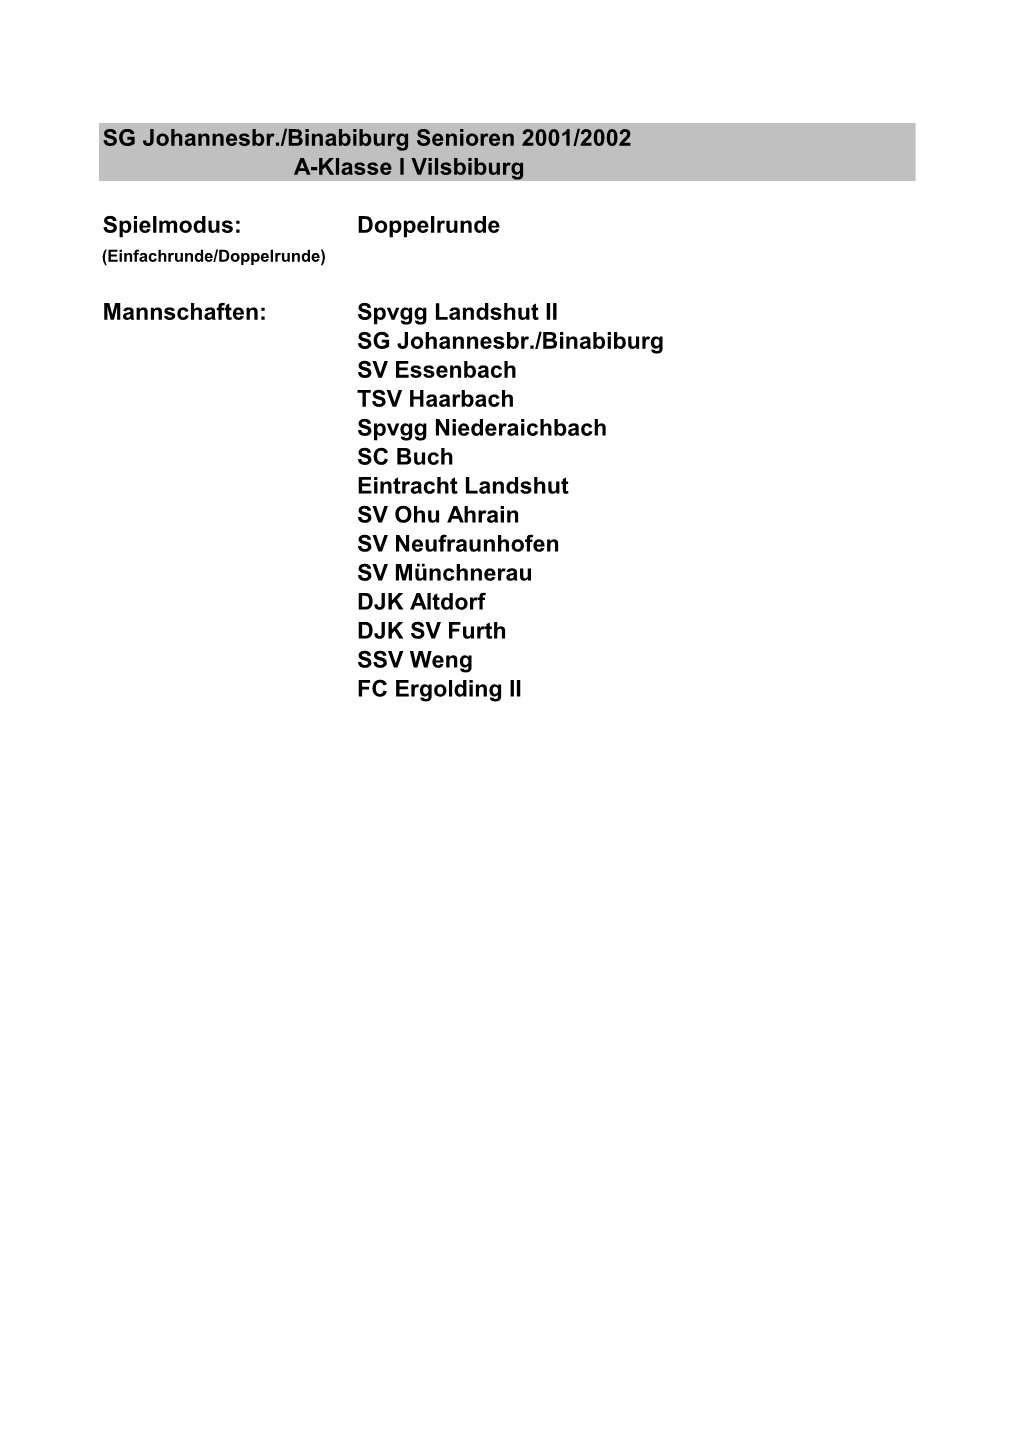 Spielmodus: Doppelrunde Mannschaften: Spvgg Landshut II